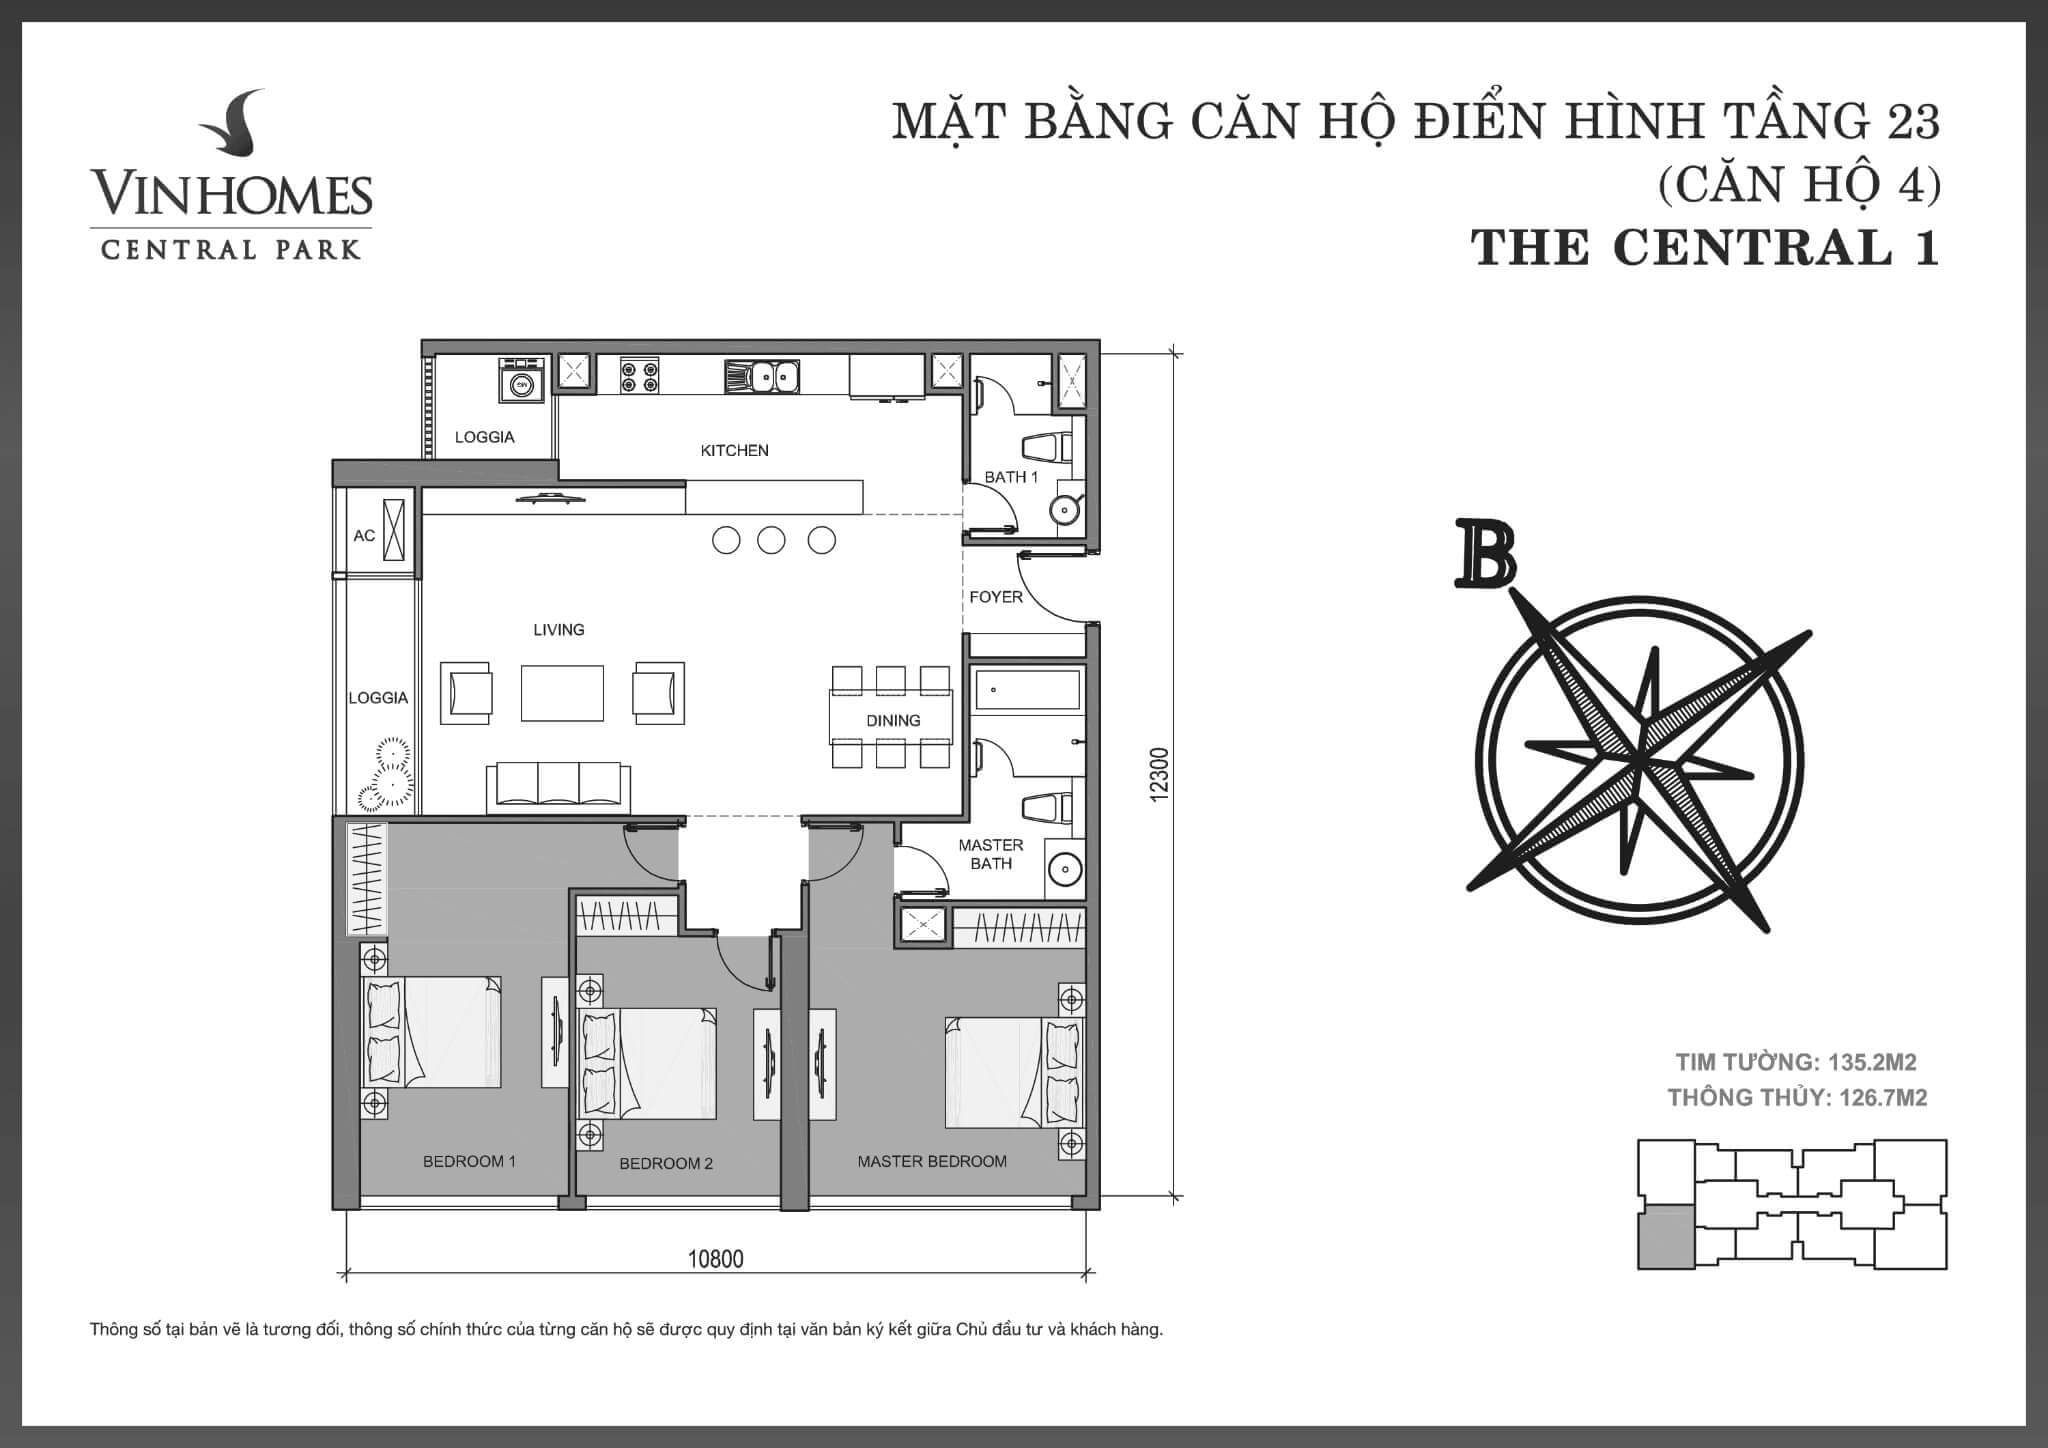 layout căn hộ số 4 tầng 23 tòa Central 1